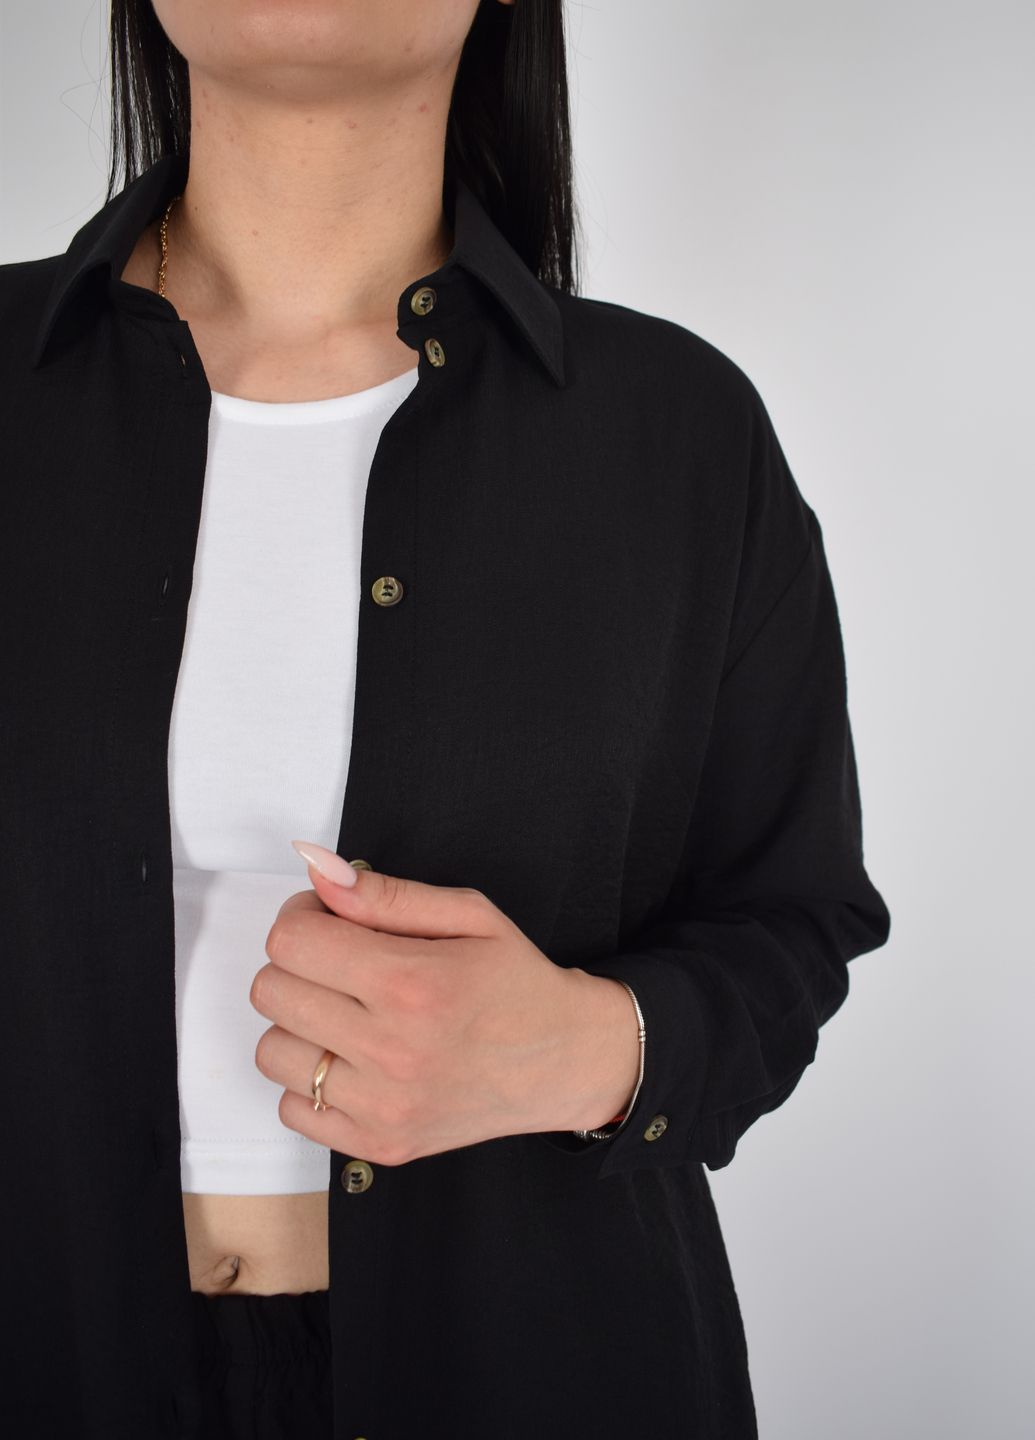 Купить Рубашка женская с длинным рукавом черного цвета из льна Merlini Беллуно 200000068, размер 42-44 в интернет-магазине